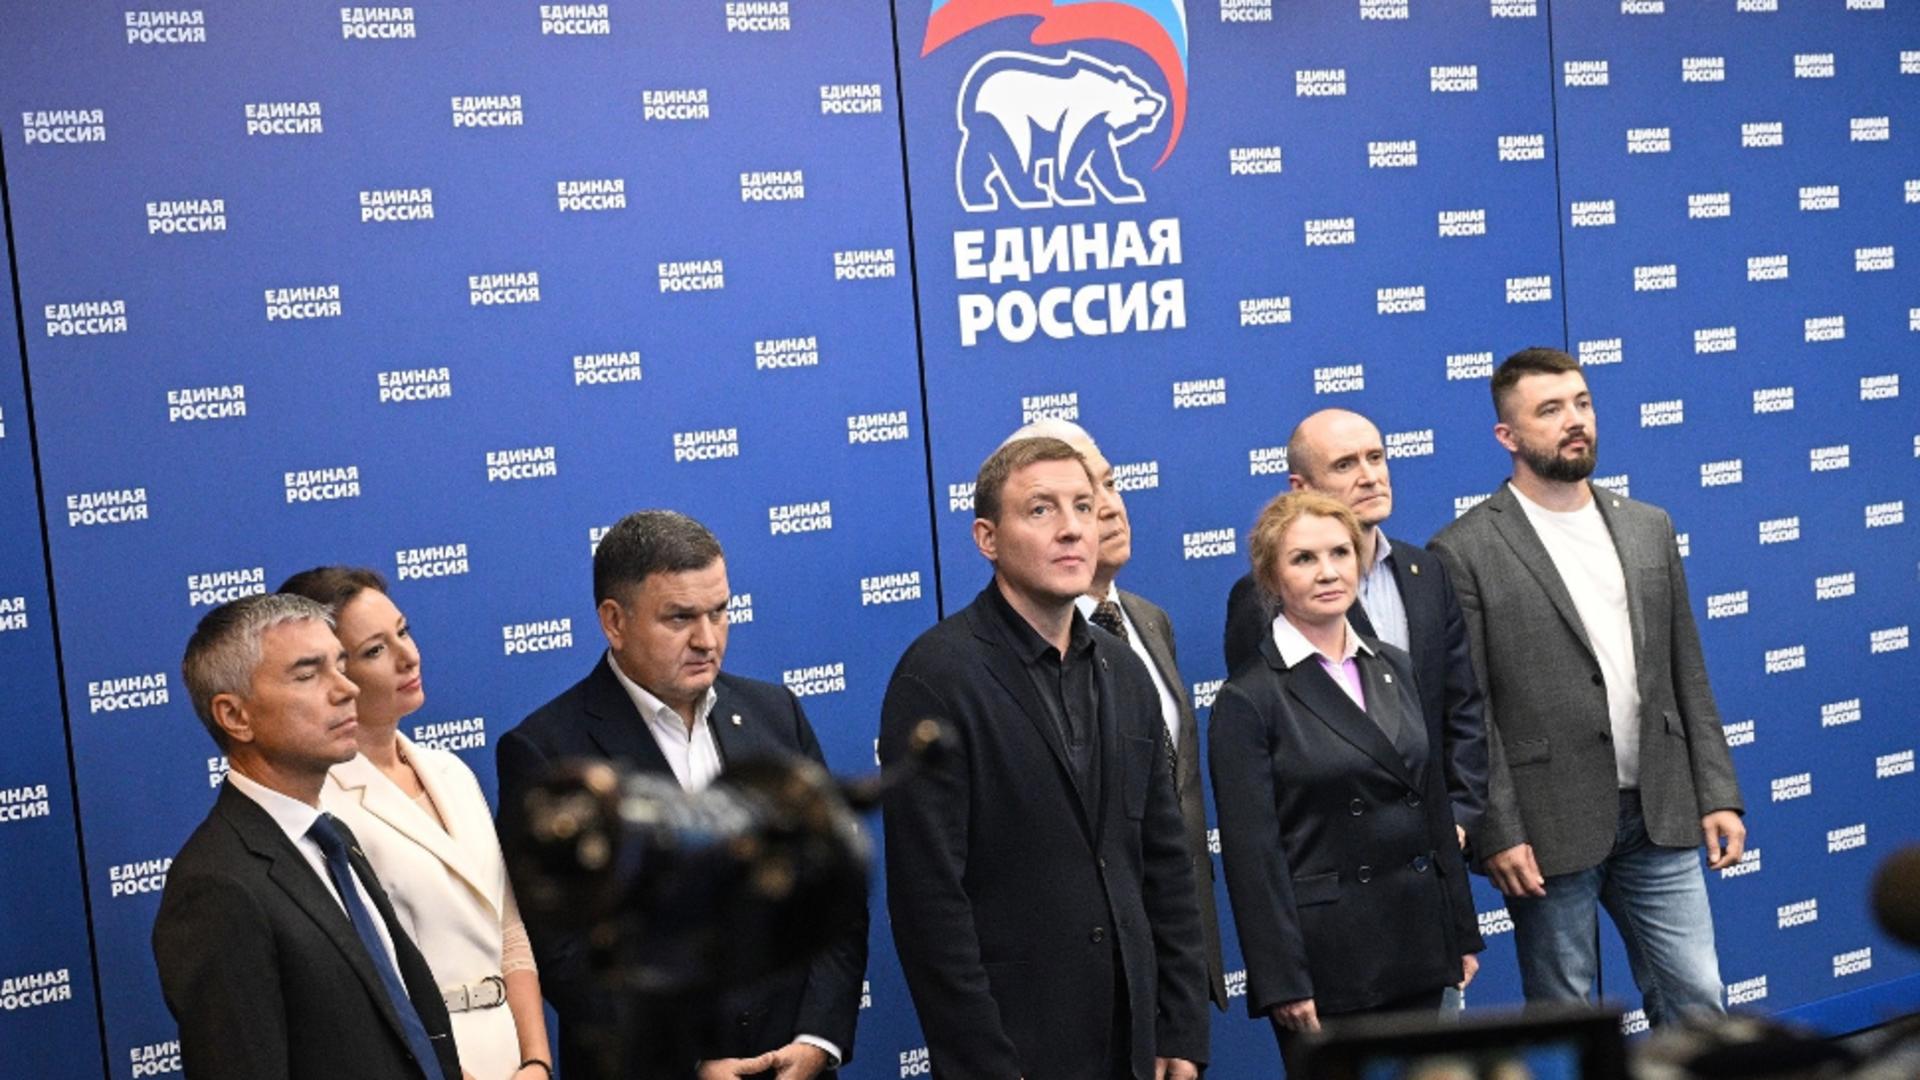 Moscova a anunțat victoria partidului lui Putin în teritoriile ocupate din Ucraina. Foto: Profimedia